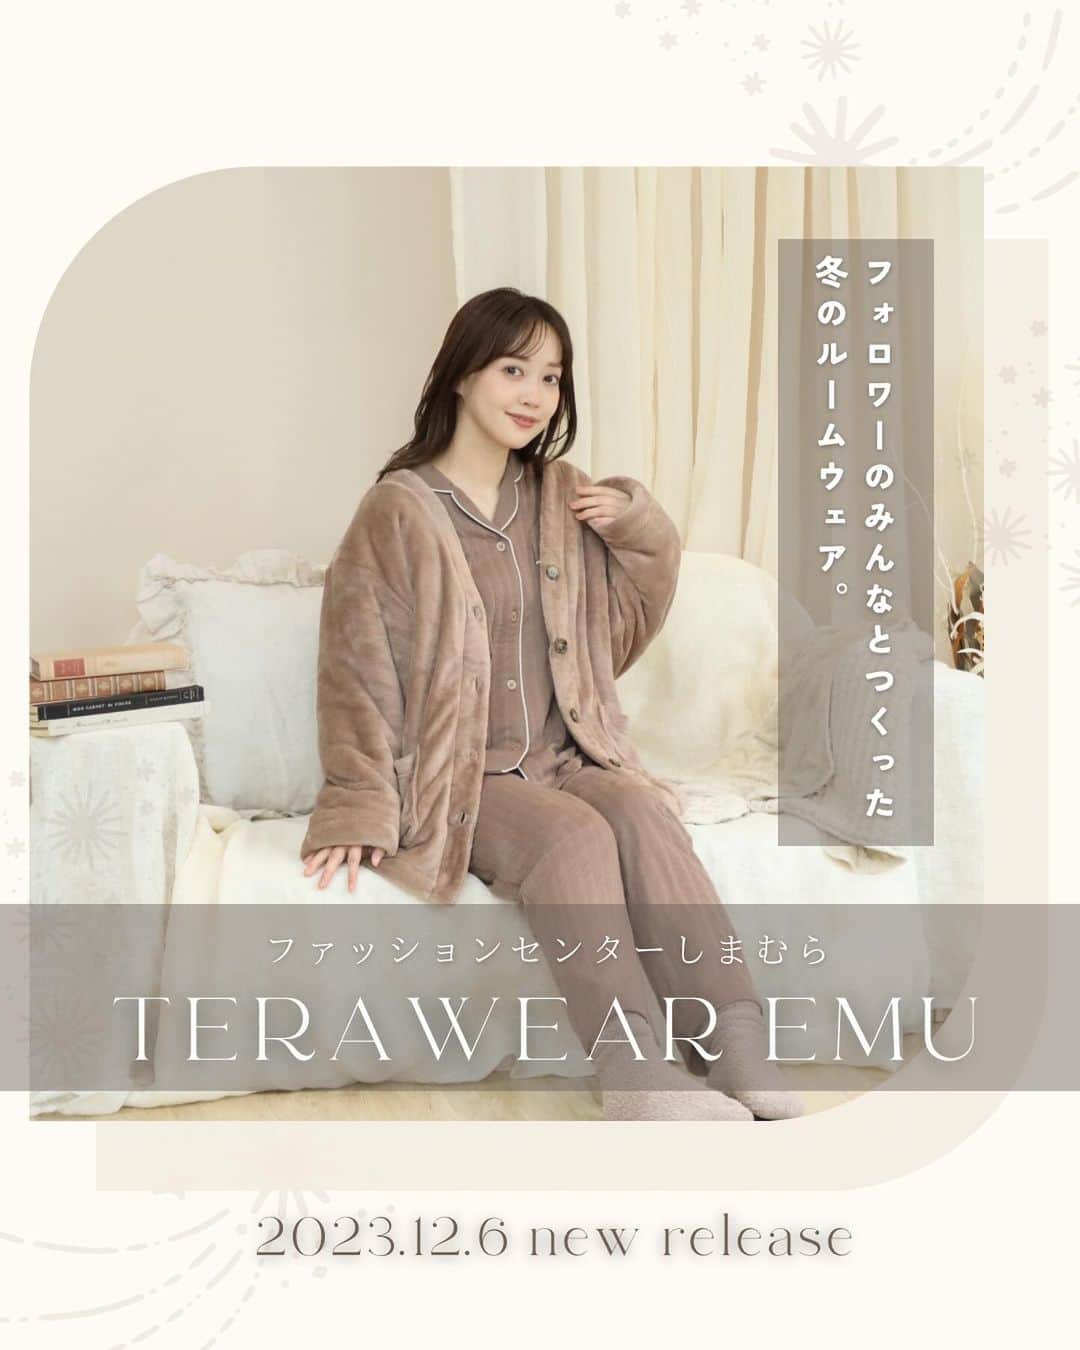 てらのインスタグラム：「みなさんこんばんは🌛☆ いつもterawear emuをご愛用いただき、 ありがとうございます☺️💕  @grshimamura にて展開中の 私のプロデュースブランド terawear emuから 新作発売のお知らせです📢❤️  ………………………………………  12月6日(水)〜 しまむら全店舗にて販売開始  12月6日(水)17:00～ オンラインストア販売開始 ………………………………………   一瞬で秋が終わり、 一気に冬本番という気候ですね⛄️ わたしは毎朝おふとんと格闘しています。 この時期のおふとんは最高ですよね、、、☺️ 今回はそんなおふとんタイムに ぴったりなアイテムと 寒〜い朝でも暖かく過ごせるアイテムを 一足早いクリスマスプレゼントということで terawear emuから皆さんに ご用意しました〜〜〜🎁🐏❤️ みなさんと一緒に考えて作ったアイテム 早くお披露目したくて ソワソワしてました〜🤤💞  今回は２アイテム！🧶 ①ルームウェア みなさんからお声をたくさんいただいていた ルームウェア、去年のhappy bag以来です😭 大変お待たせしました🥺✨ 今年もterawear emuから出せて嬉しい！🥺 フォロワーさんたちとアンケートで決めた、 こだわりの詰まったルームウェアです🤎  落ち着いた色味のブラウン🧸と さりげなく可愛いピンク🌸の 2色展開です🫶🏻✨ みんなに選んでもらった 刺繍のデザインもお気に入り🩷🪡✨  素材にもこだわっていて、 肌側綿100%の柔らかい素材です！ 袖を通した瞬間、リラックスできます🫠💞  ②ルームジャケット  寒ーい冬でもあったかく過ごすのに 欠かせないルームジャケット。☕️ パジャマに合わせて選んでもらったカラーが どちらも大正解で、どの組み合わせでも 可愛くてとってもお気に入りです☺️🩷  裏ボアで、もこもこあったかいけど Vネックなので、スッキリ着れます！ お尻まですっぽり隠してくれるので 冷え対策もバッチリです🙆🏻‍♀️✨ これからの肌寒いシーズンも 快適に過ごしていただけます☺️🫶🏻🤍  今回もこのようなフォロワーさんと 一緒にアイテムをお作りできる機会が いただけて嬉しく思います☺️ いつも応援してくださるみなさんのおかげです✨ 本当にありがとうございます🥺💘 ぜひ、全国のしまむらさんのお店や オンラインストアにてチェック してみてください☺️✨  【インスタライブは12/5(火)12:00〜】 ご質問にもお答えしていきますので ぜひリアタイしてください〜🎤  また今月もお知らせができて嬉しい☺️ みんないつもありがとう🥰  #PR #しまパト#しまむら#しまむらパトロール#しまむらコーデ#ファッションセンターしまむら#プチプラ#プチプラコーデ#ママコーデ#きっと見つかる#みんなワクワク#terawearemu#冬コーデ#ルームウェア」